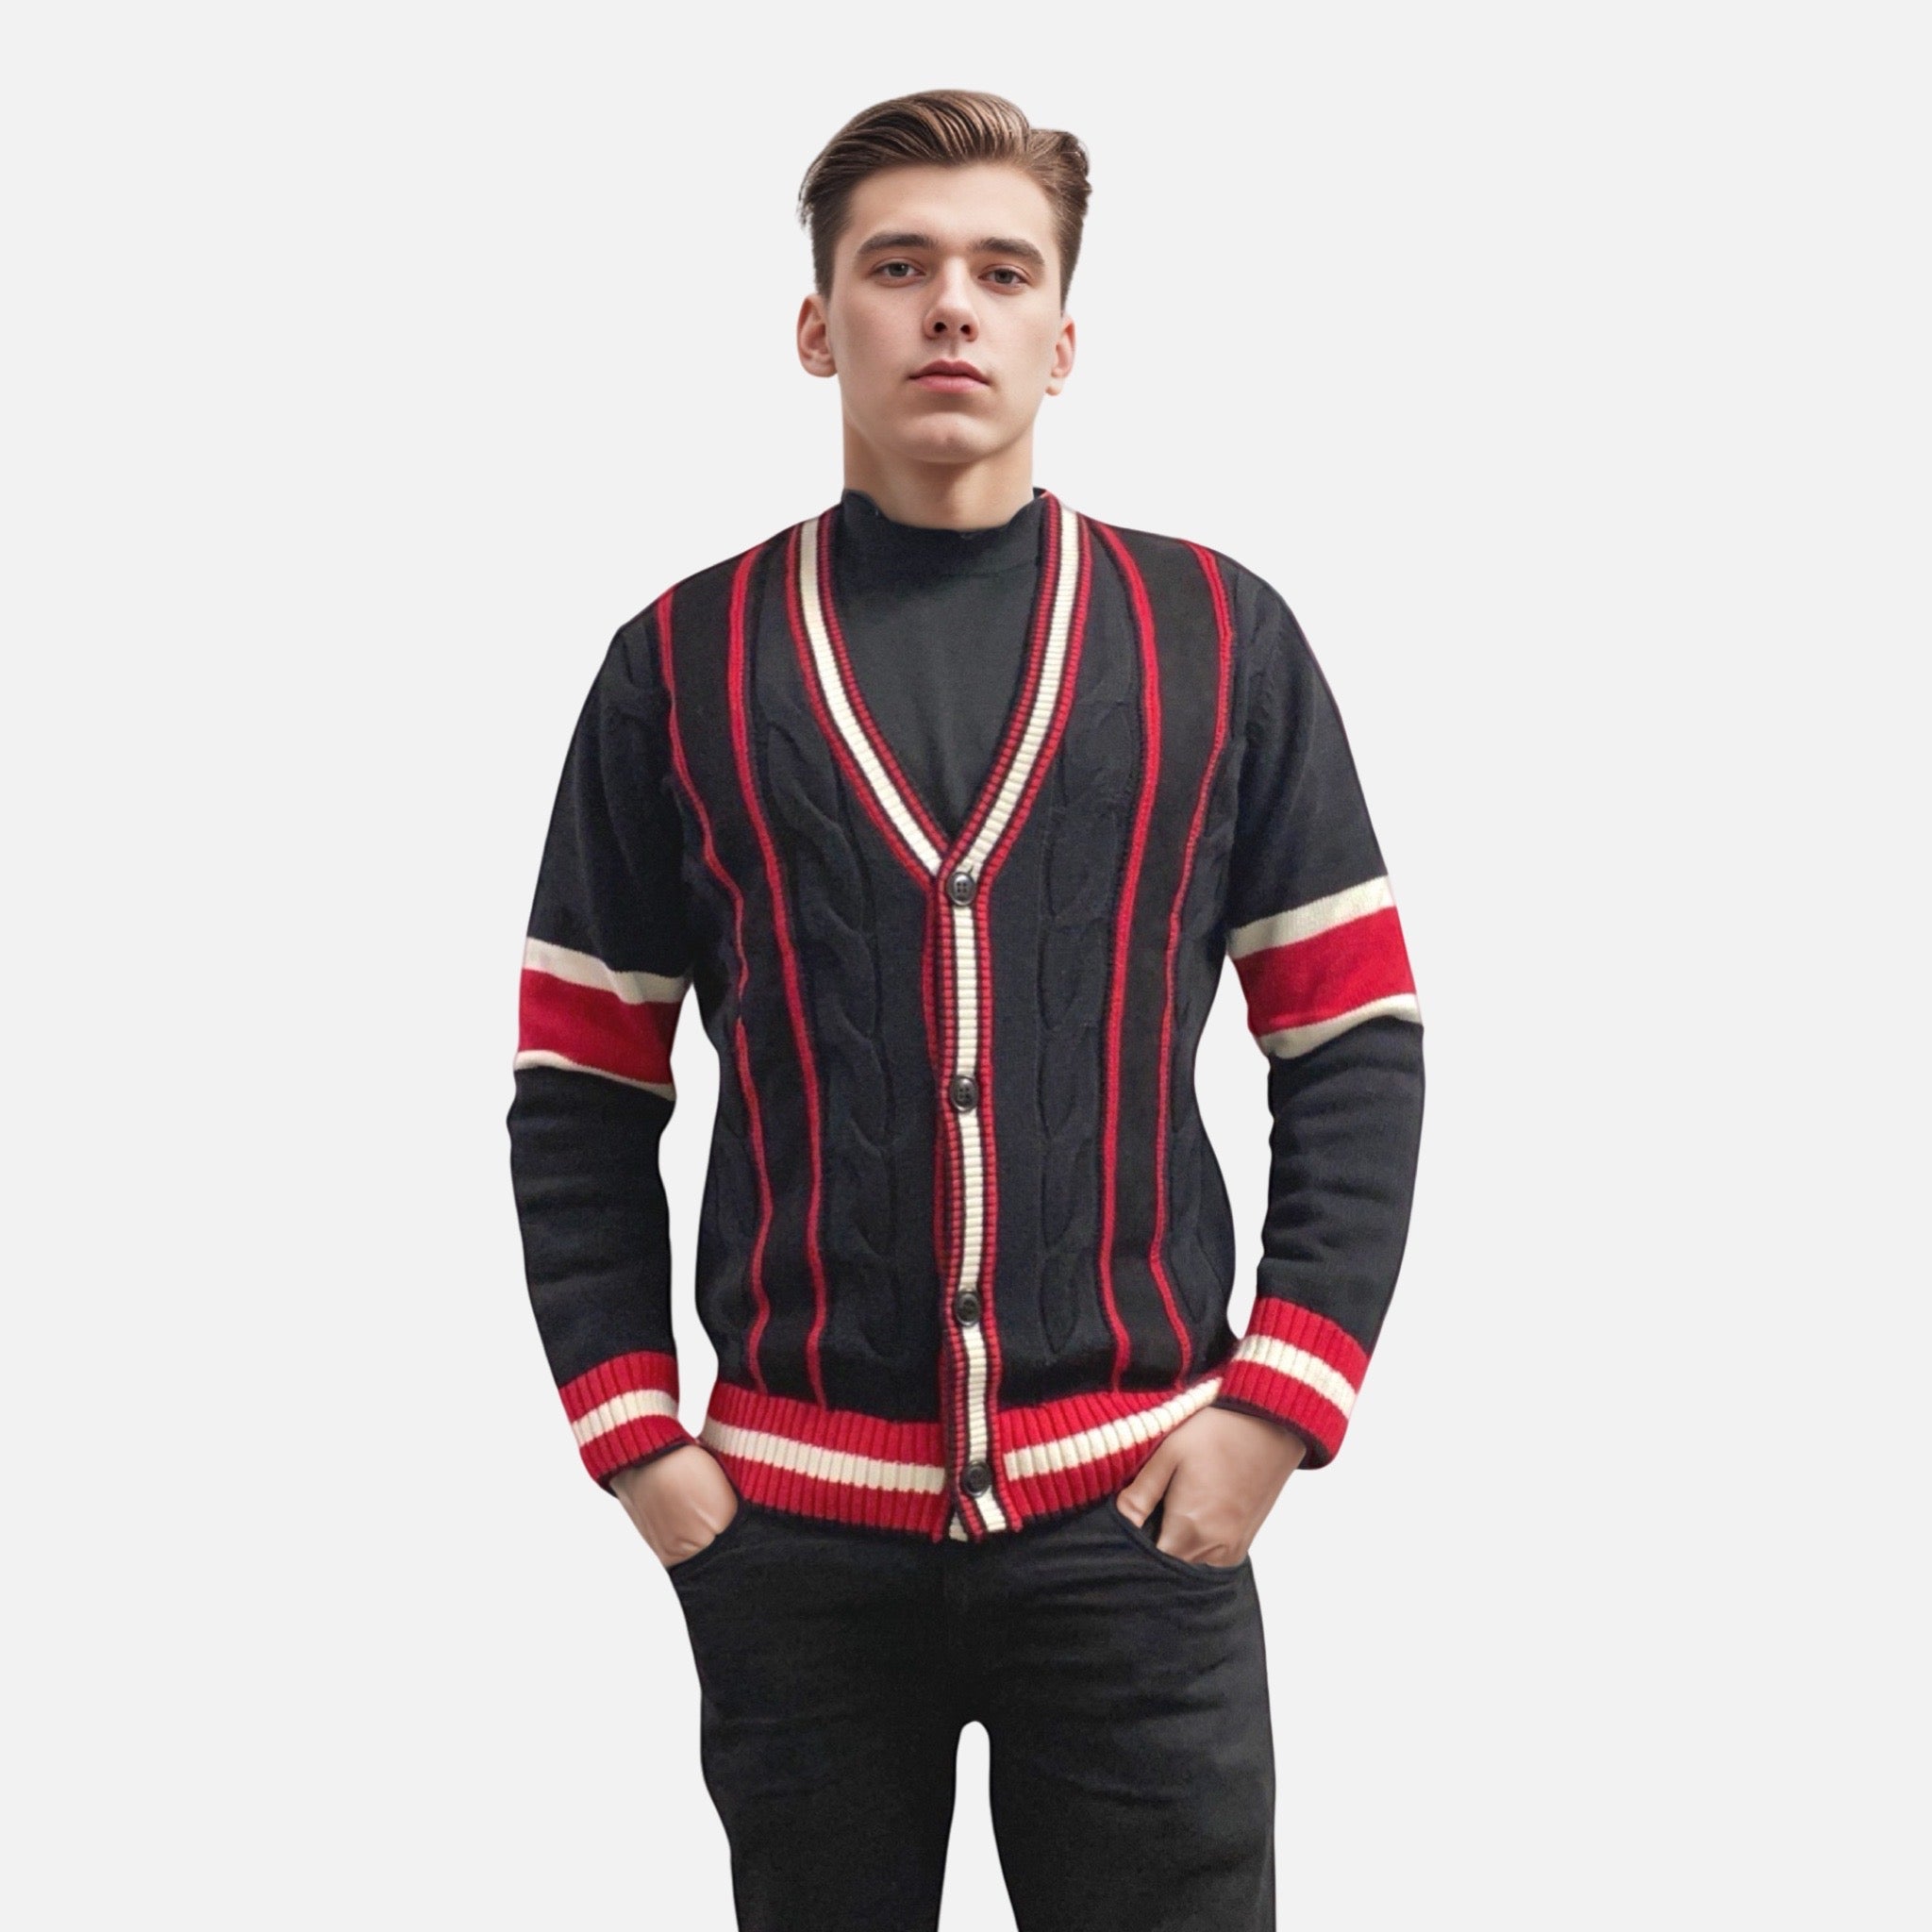 Inserch Black Cardigan Sweater SW901 - Men's Cozy Knitwear | Sale